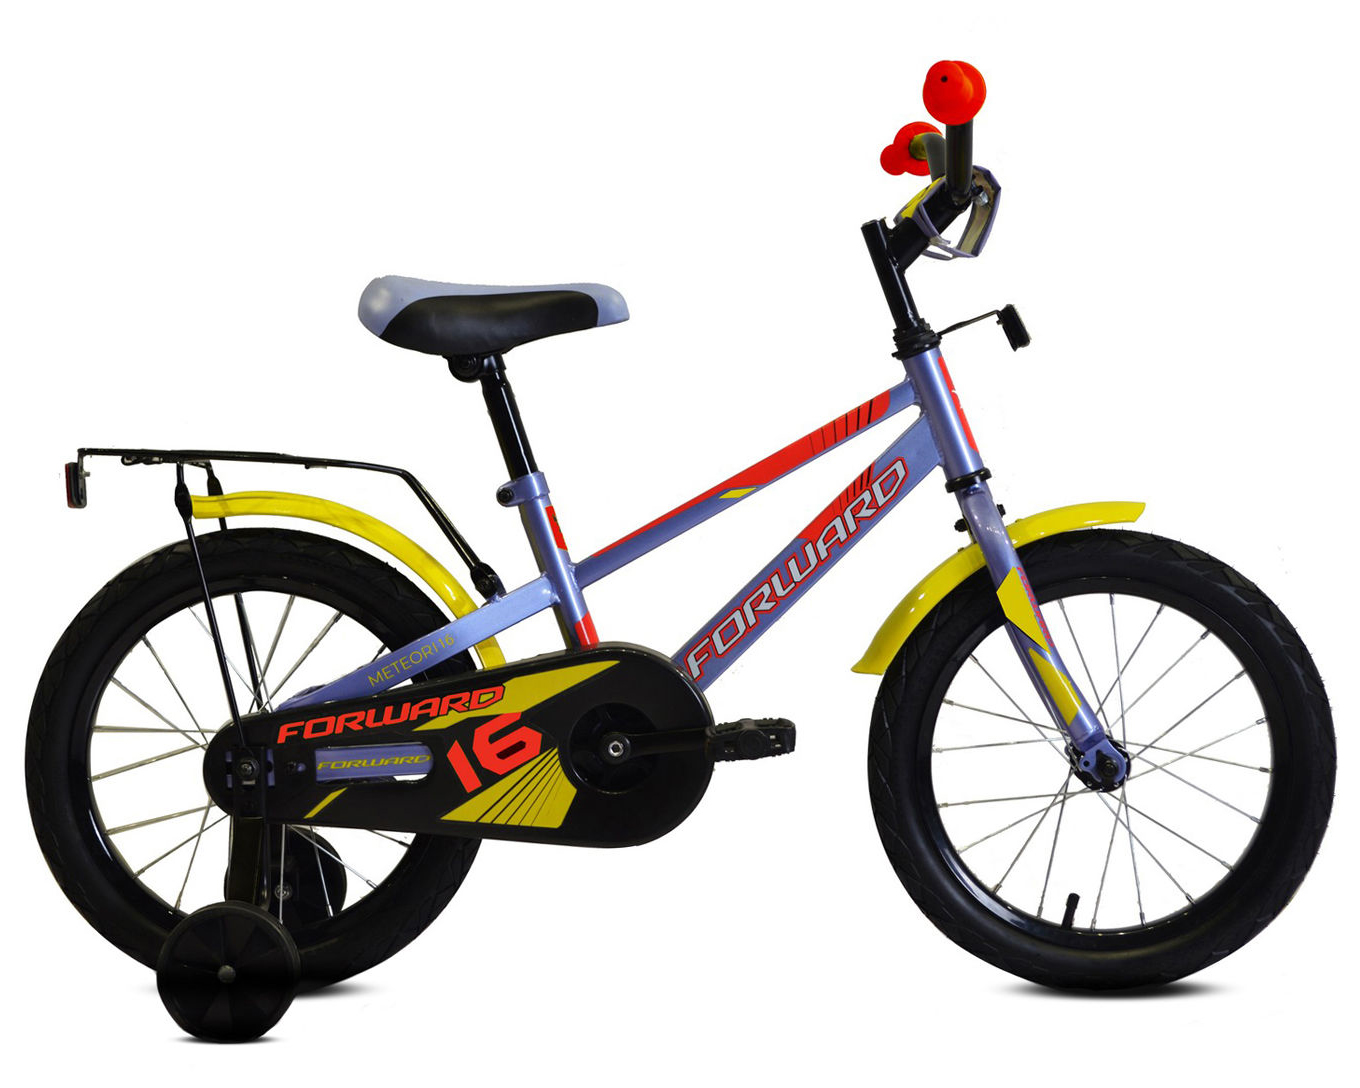  Отзывы о Детском велосипеде Forward Meteor 12 2020